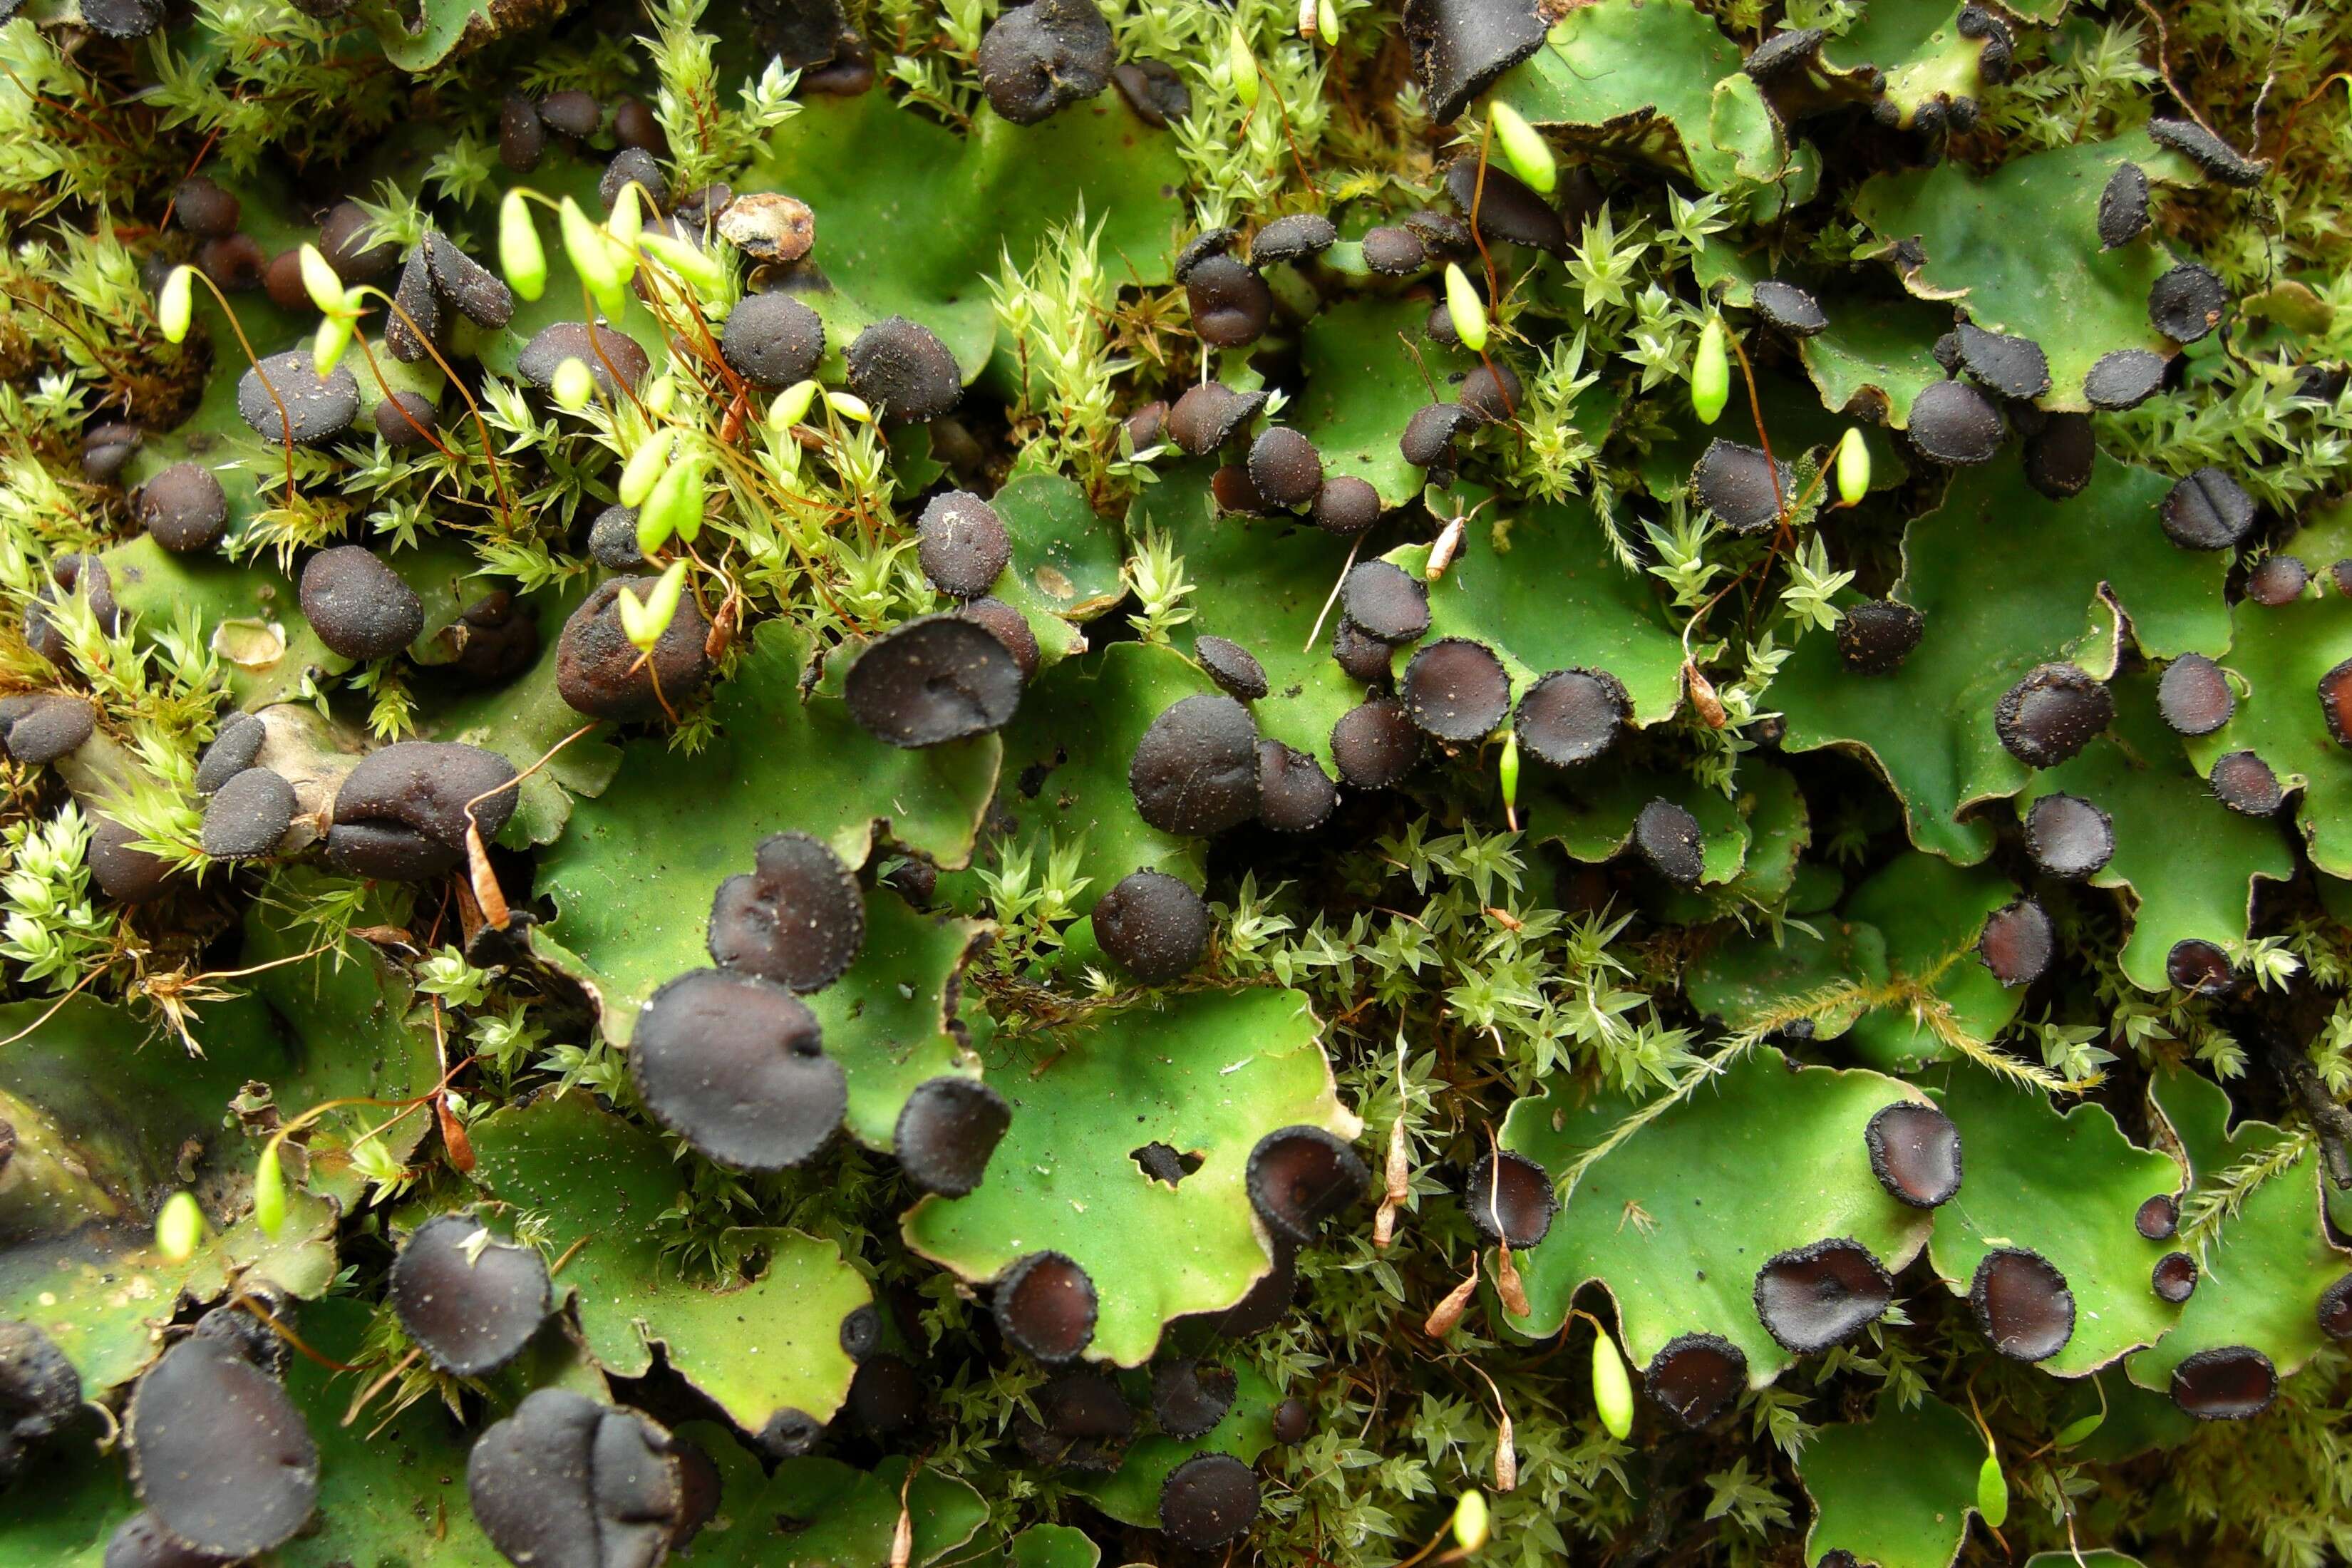 Image of Fan lichen;   Felt lichen